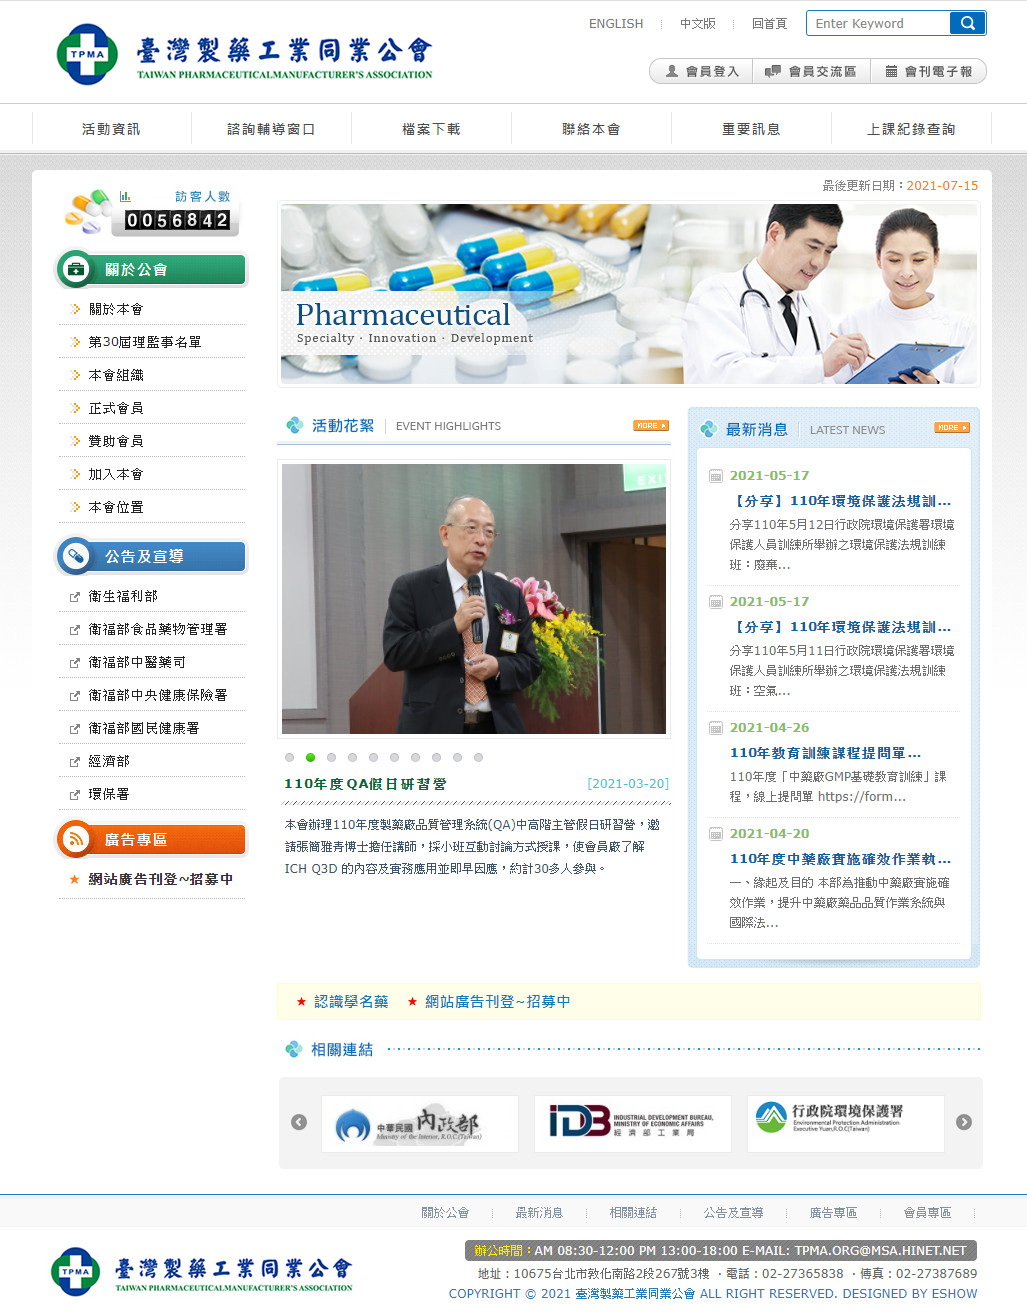 臺灣製藥工業同業公會 公會機關網站設計
網站設計